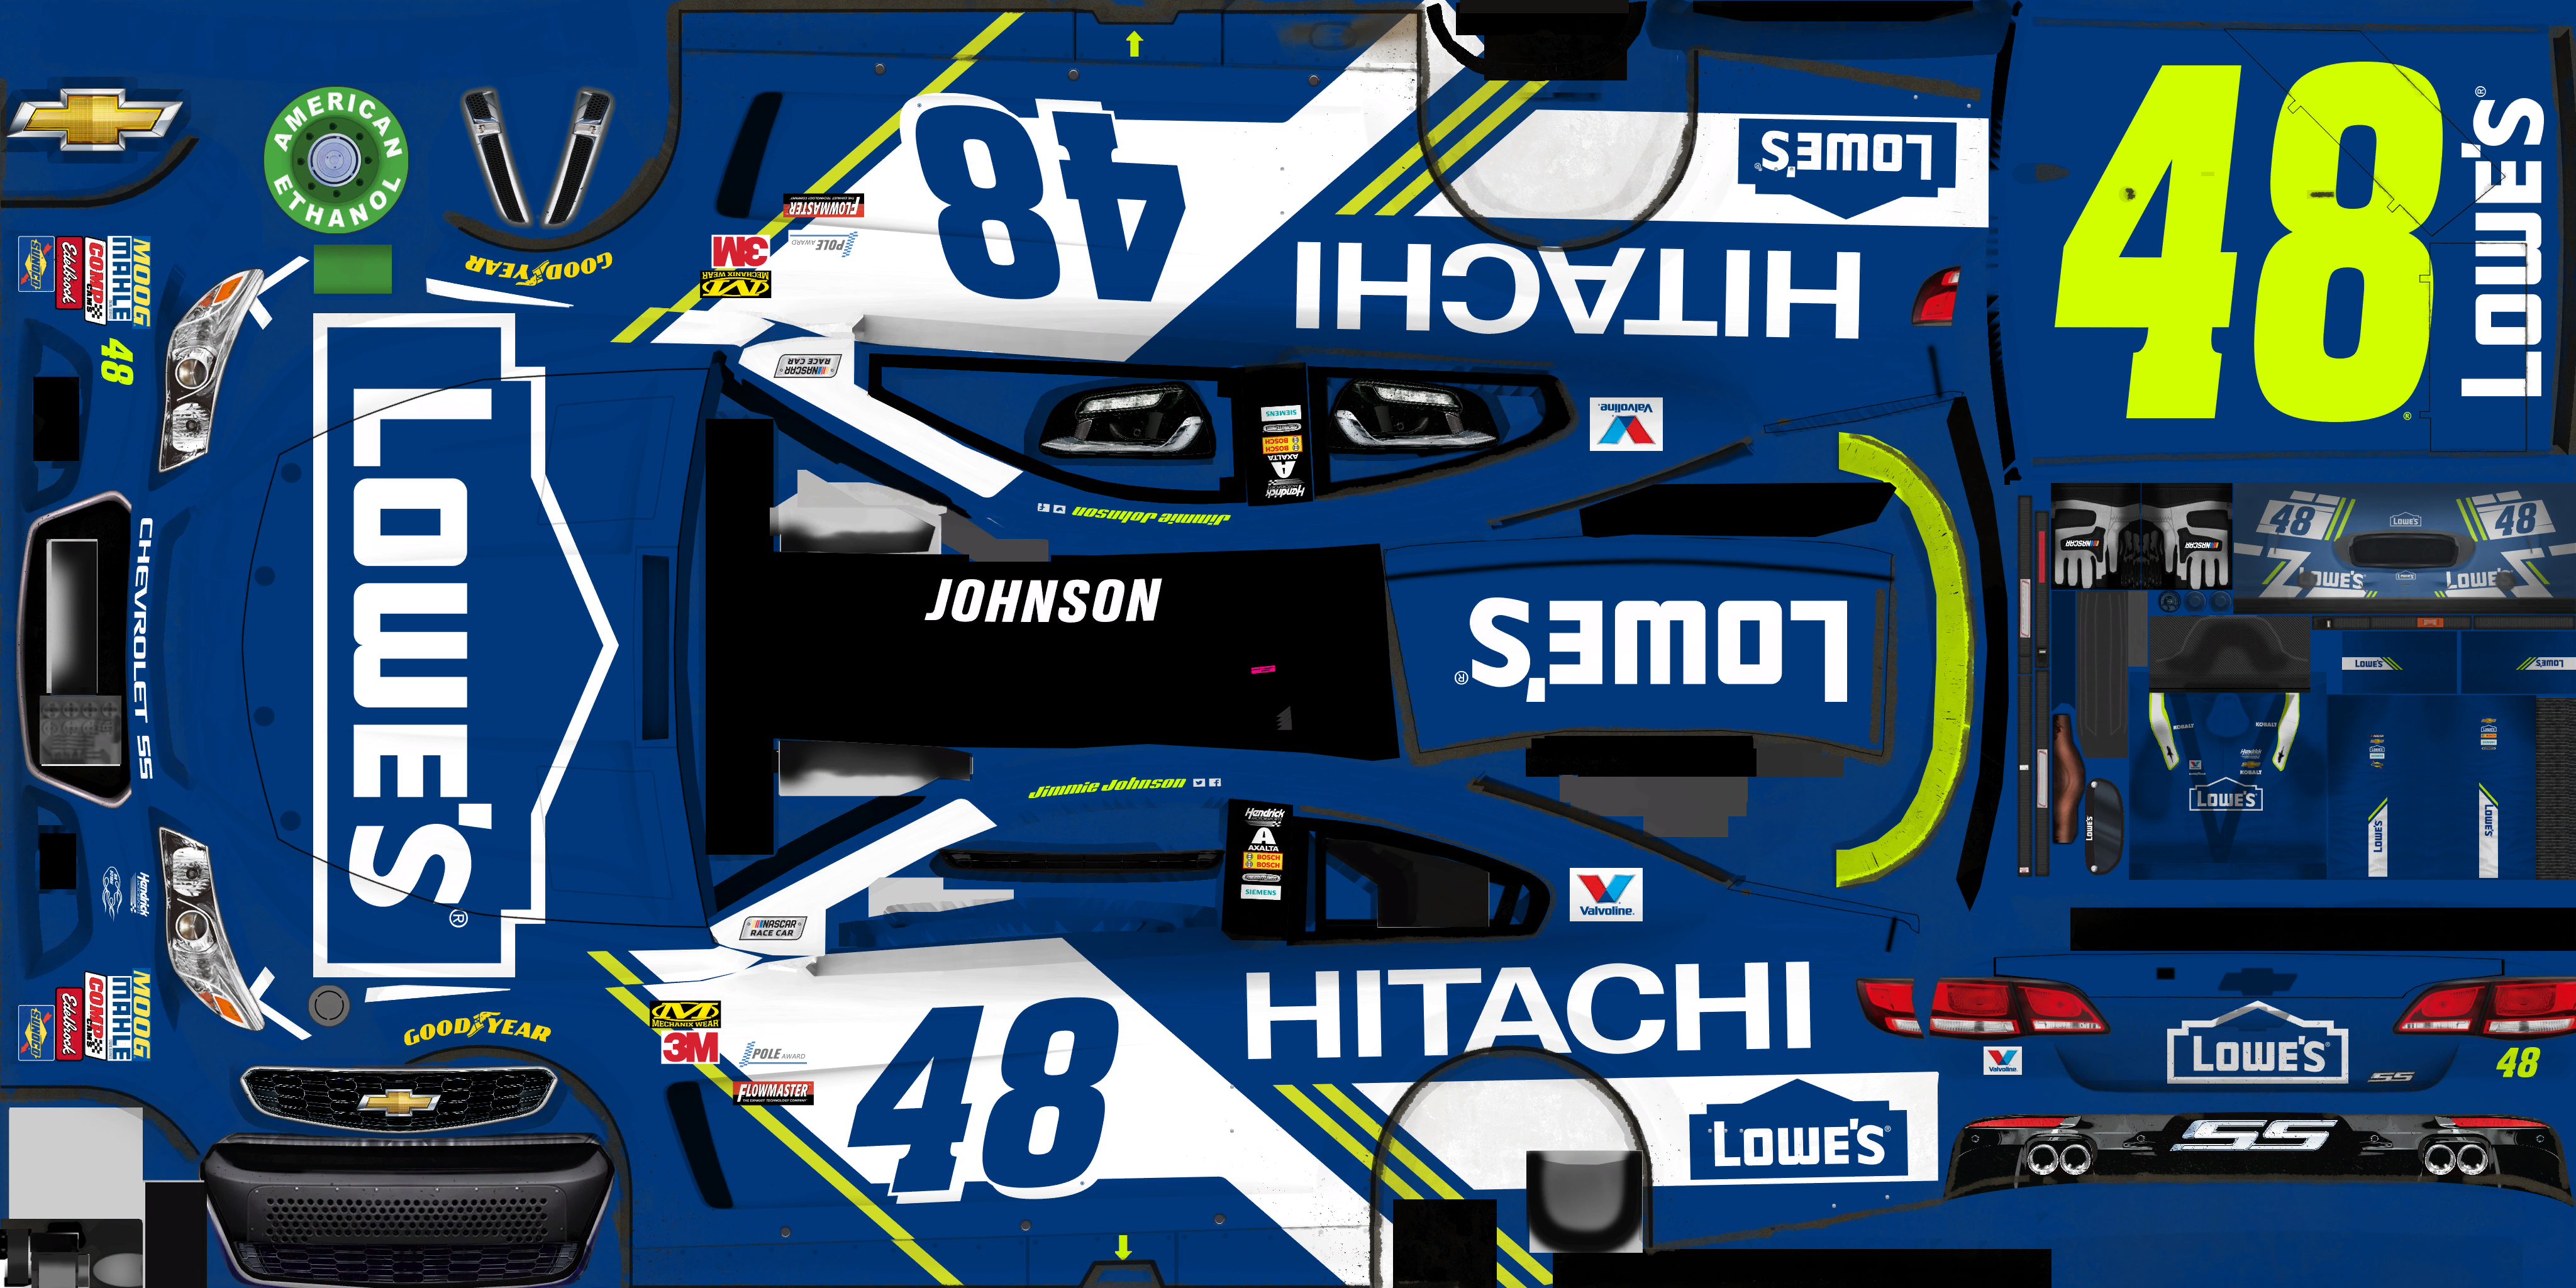 NASCAR Heat 2 - #48 Jimmie Johnson (Texas)